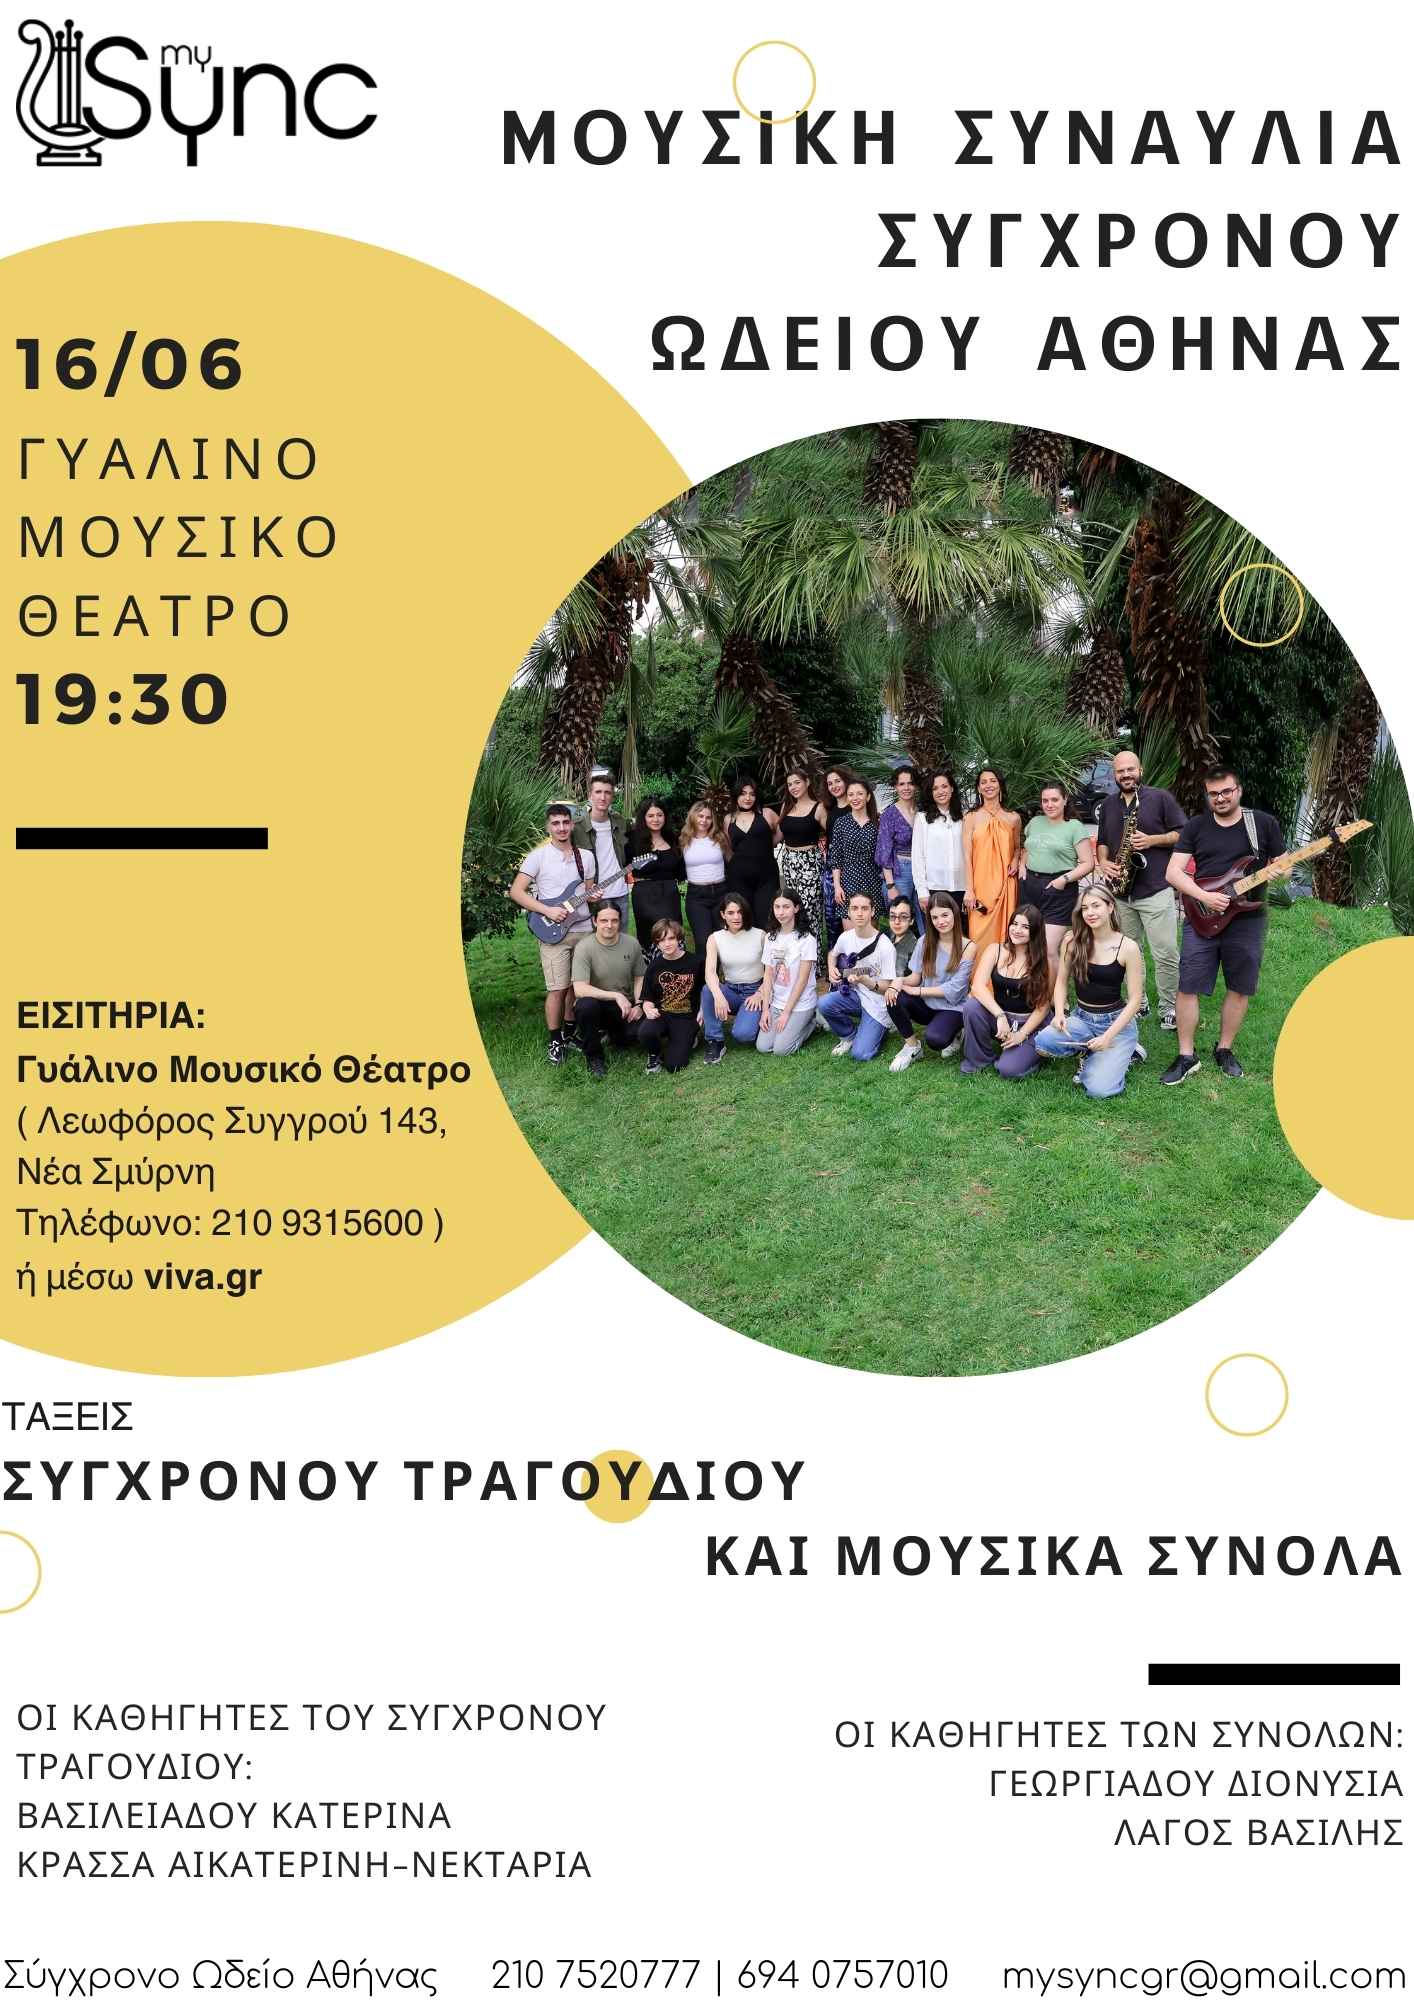 Μουσική Συναυλία Σύγχρονου Ωδείου Αθήνας